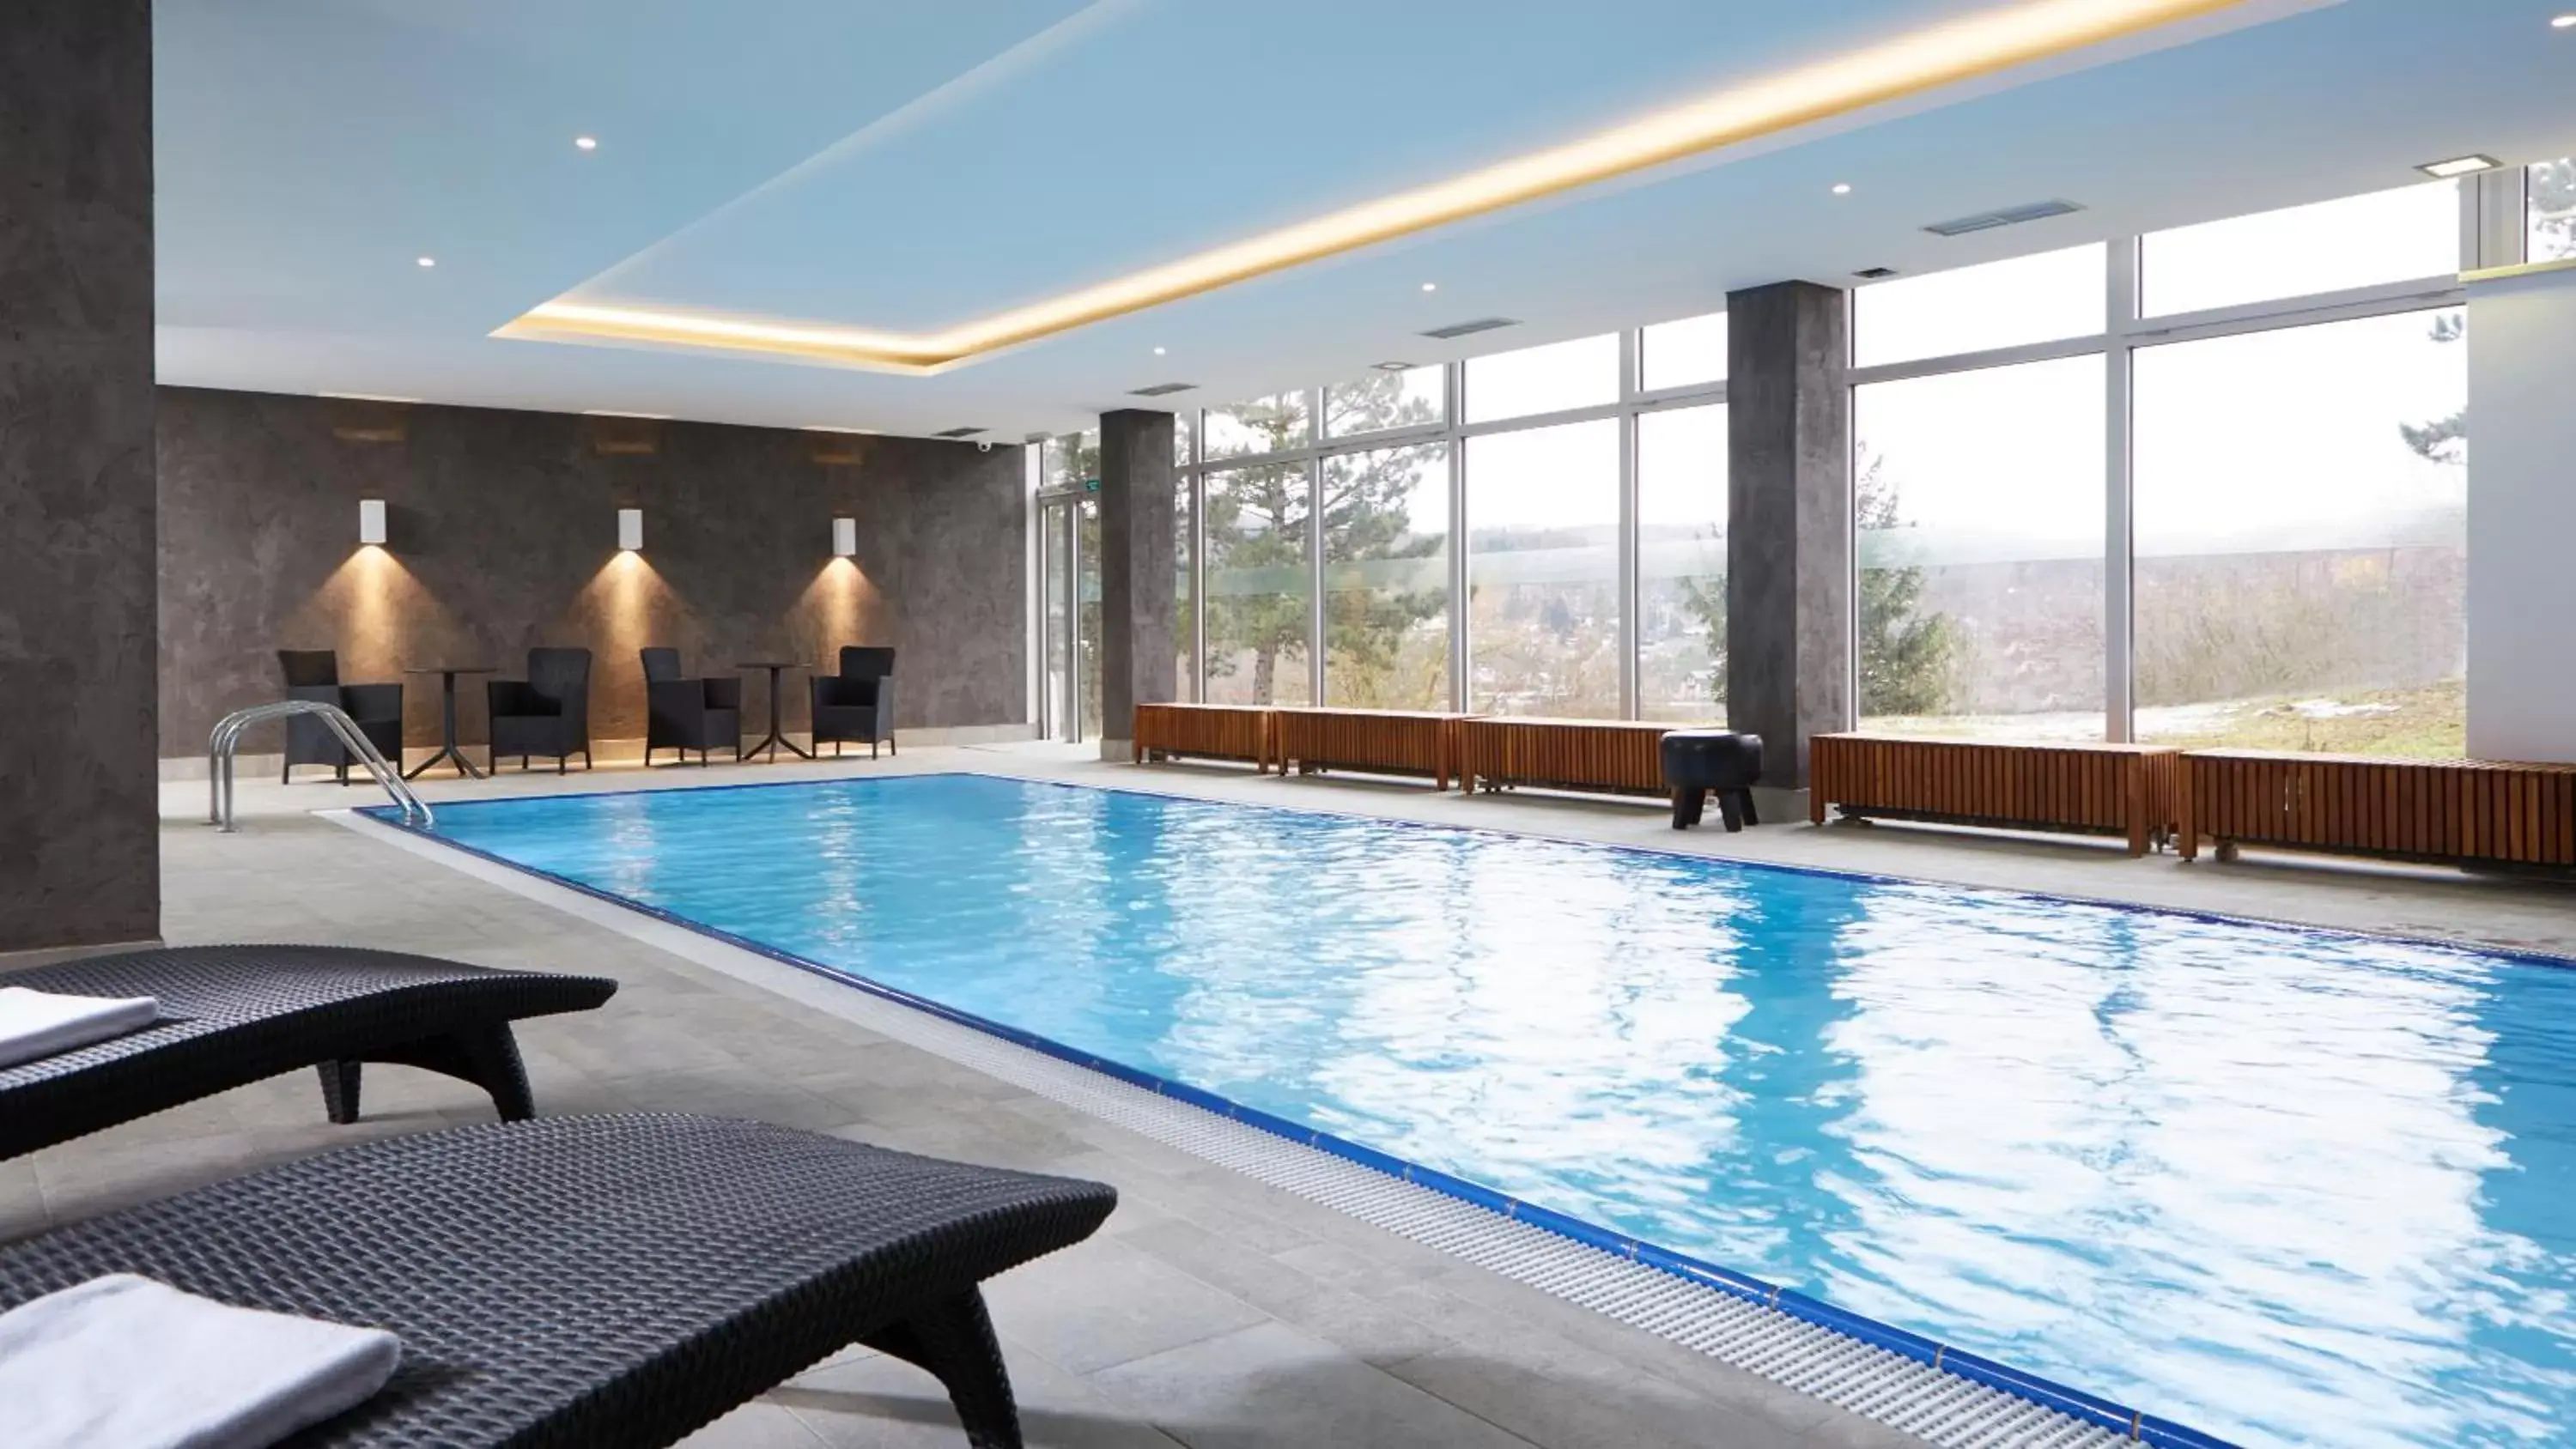 Spa and wellness centre/facilities, Swimming Pool in OREA Resort Santon Brno